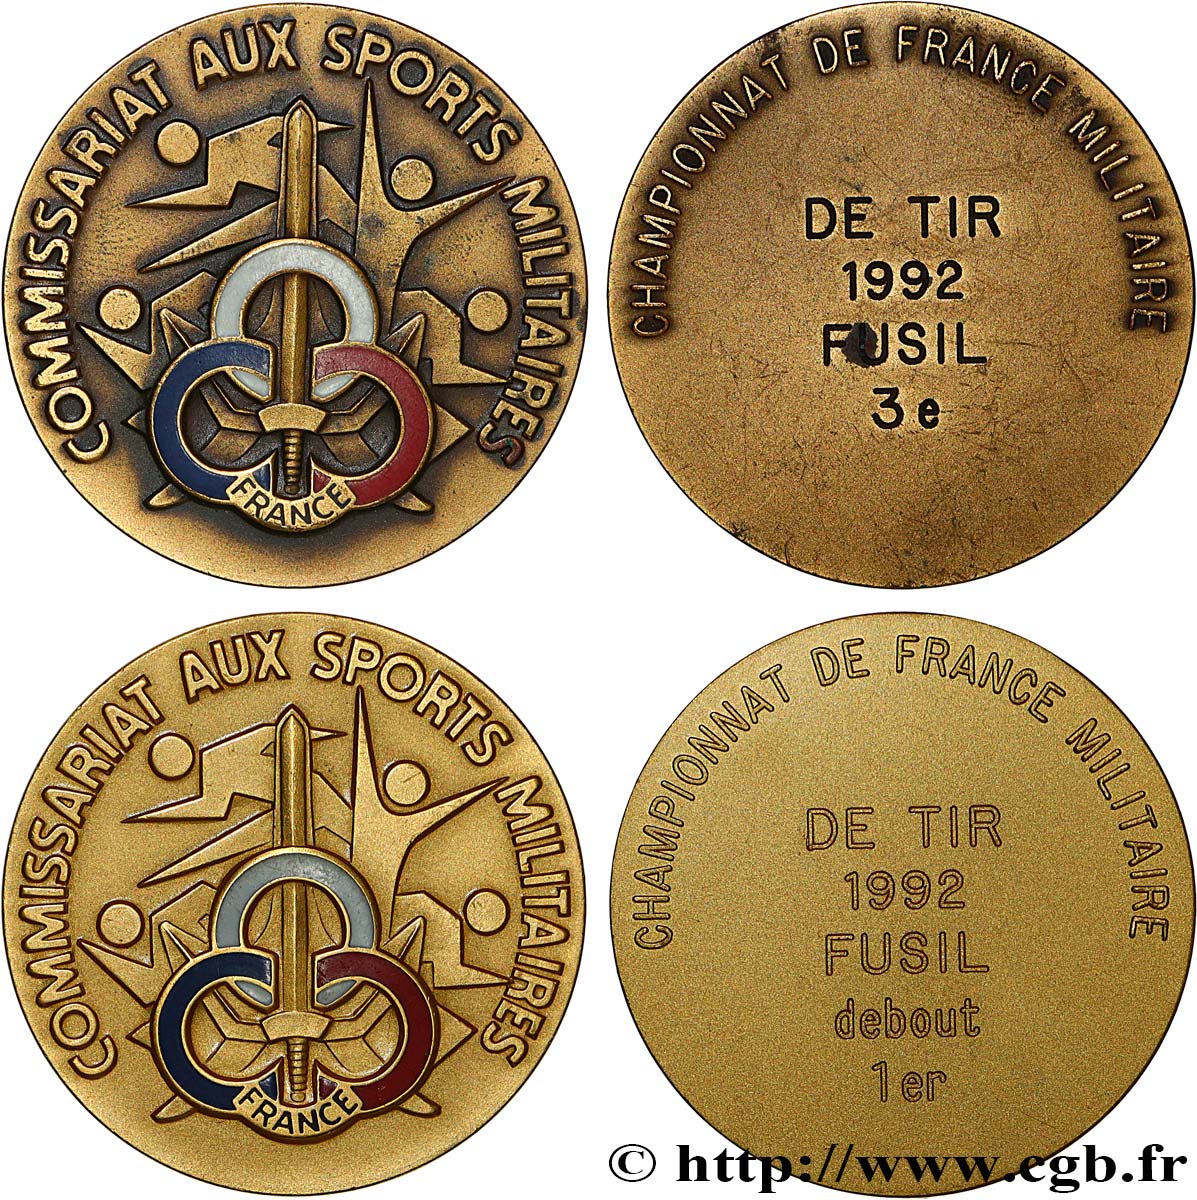 TIR ET ARQUEBUSE Médaille, Commissariat aux sports militaires, Lot de 2 exemplaires AU